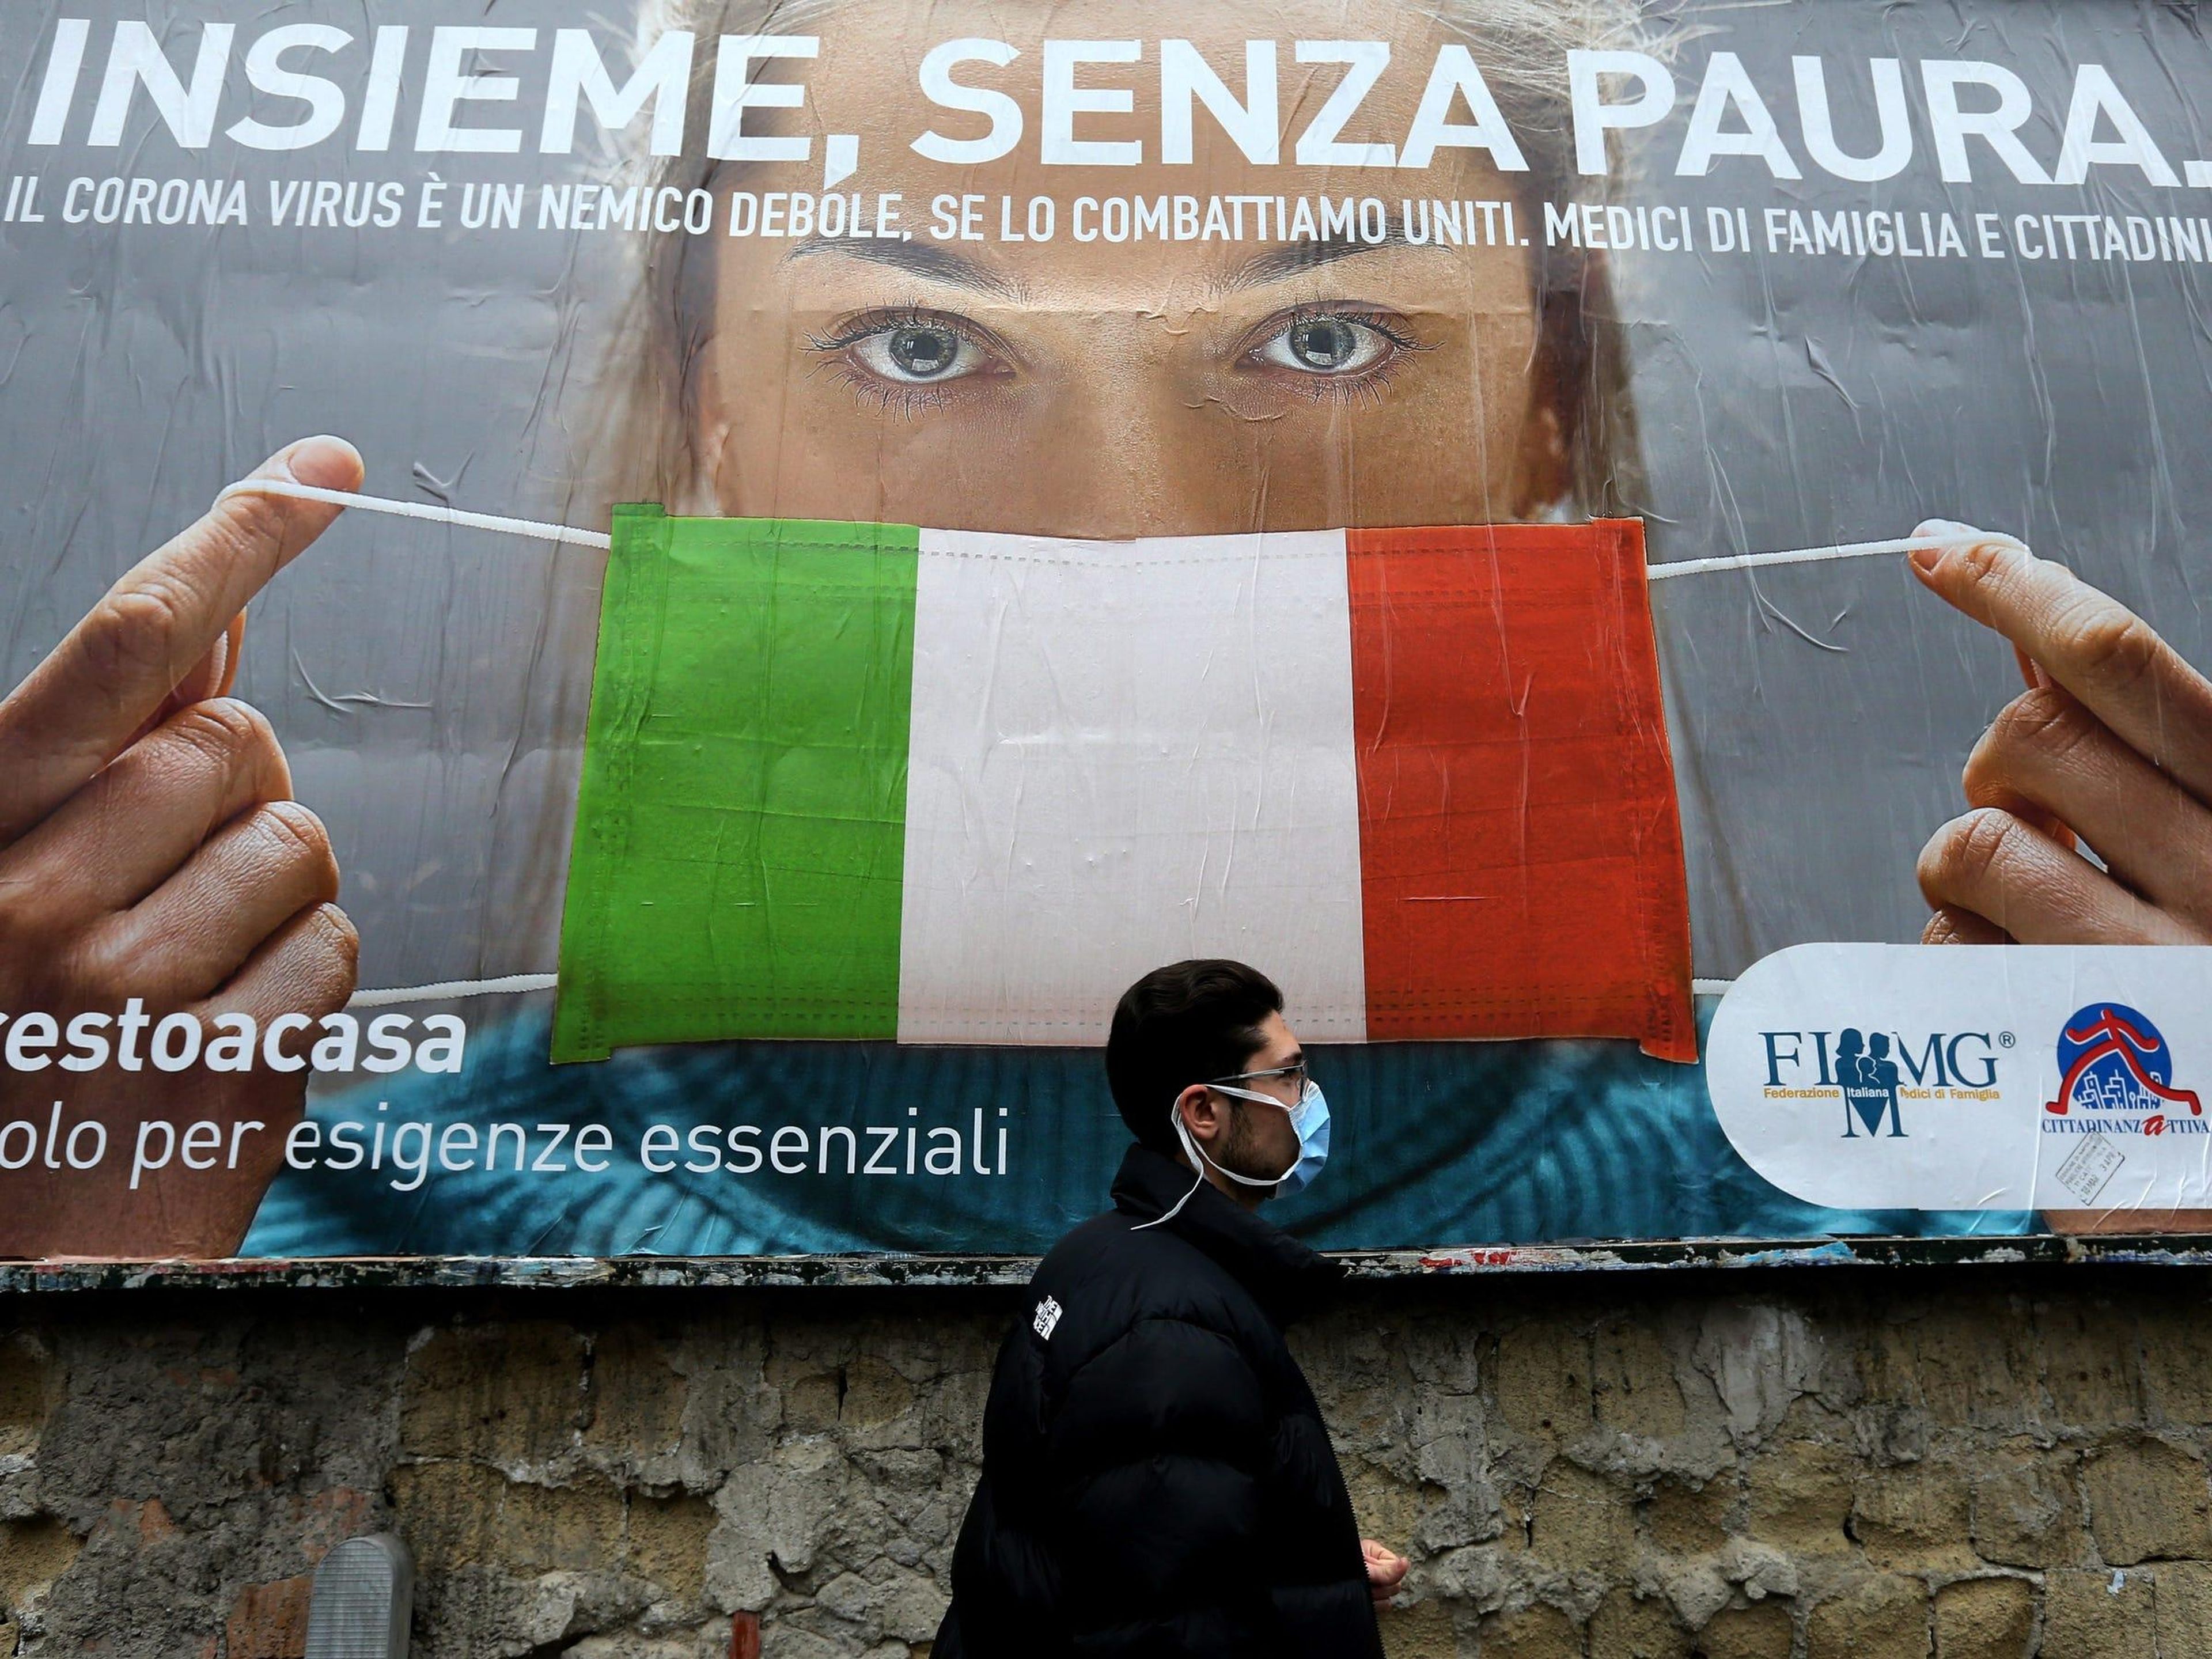 Un hombre pasa junto a una valla publicitaria sobre el nuevo coronavirus: "Juntos, sin miedo", Nápoles, Italia, 22 de marzo de 2020.